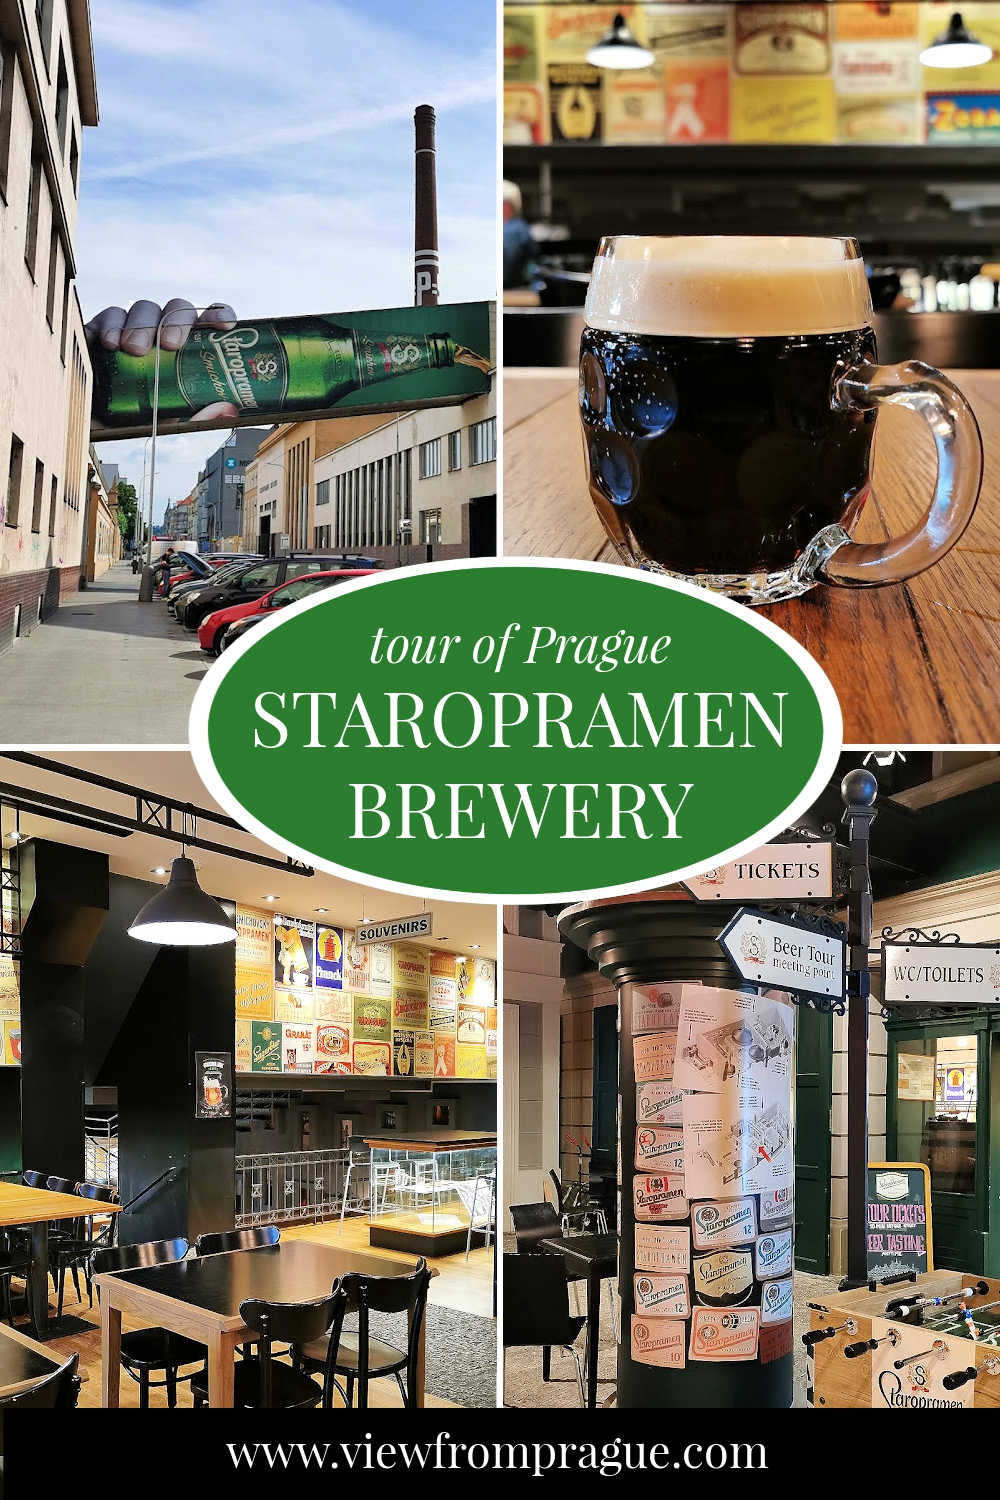 staropramen brewery tour tickets